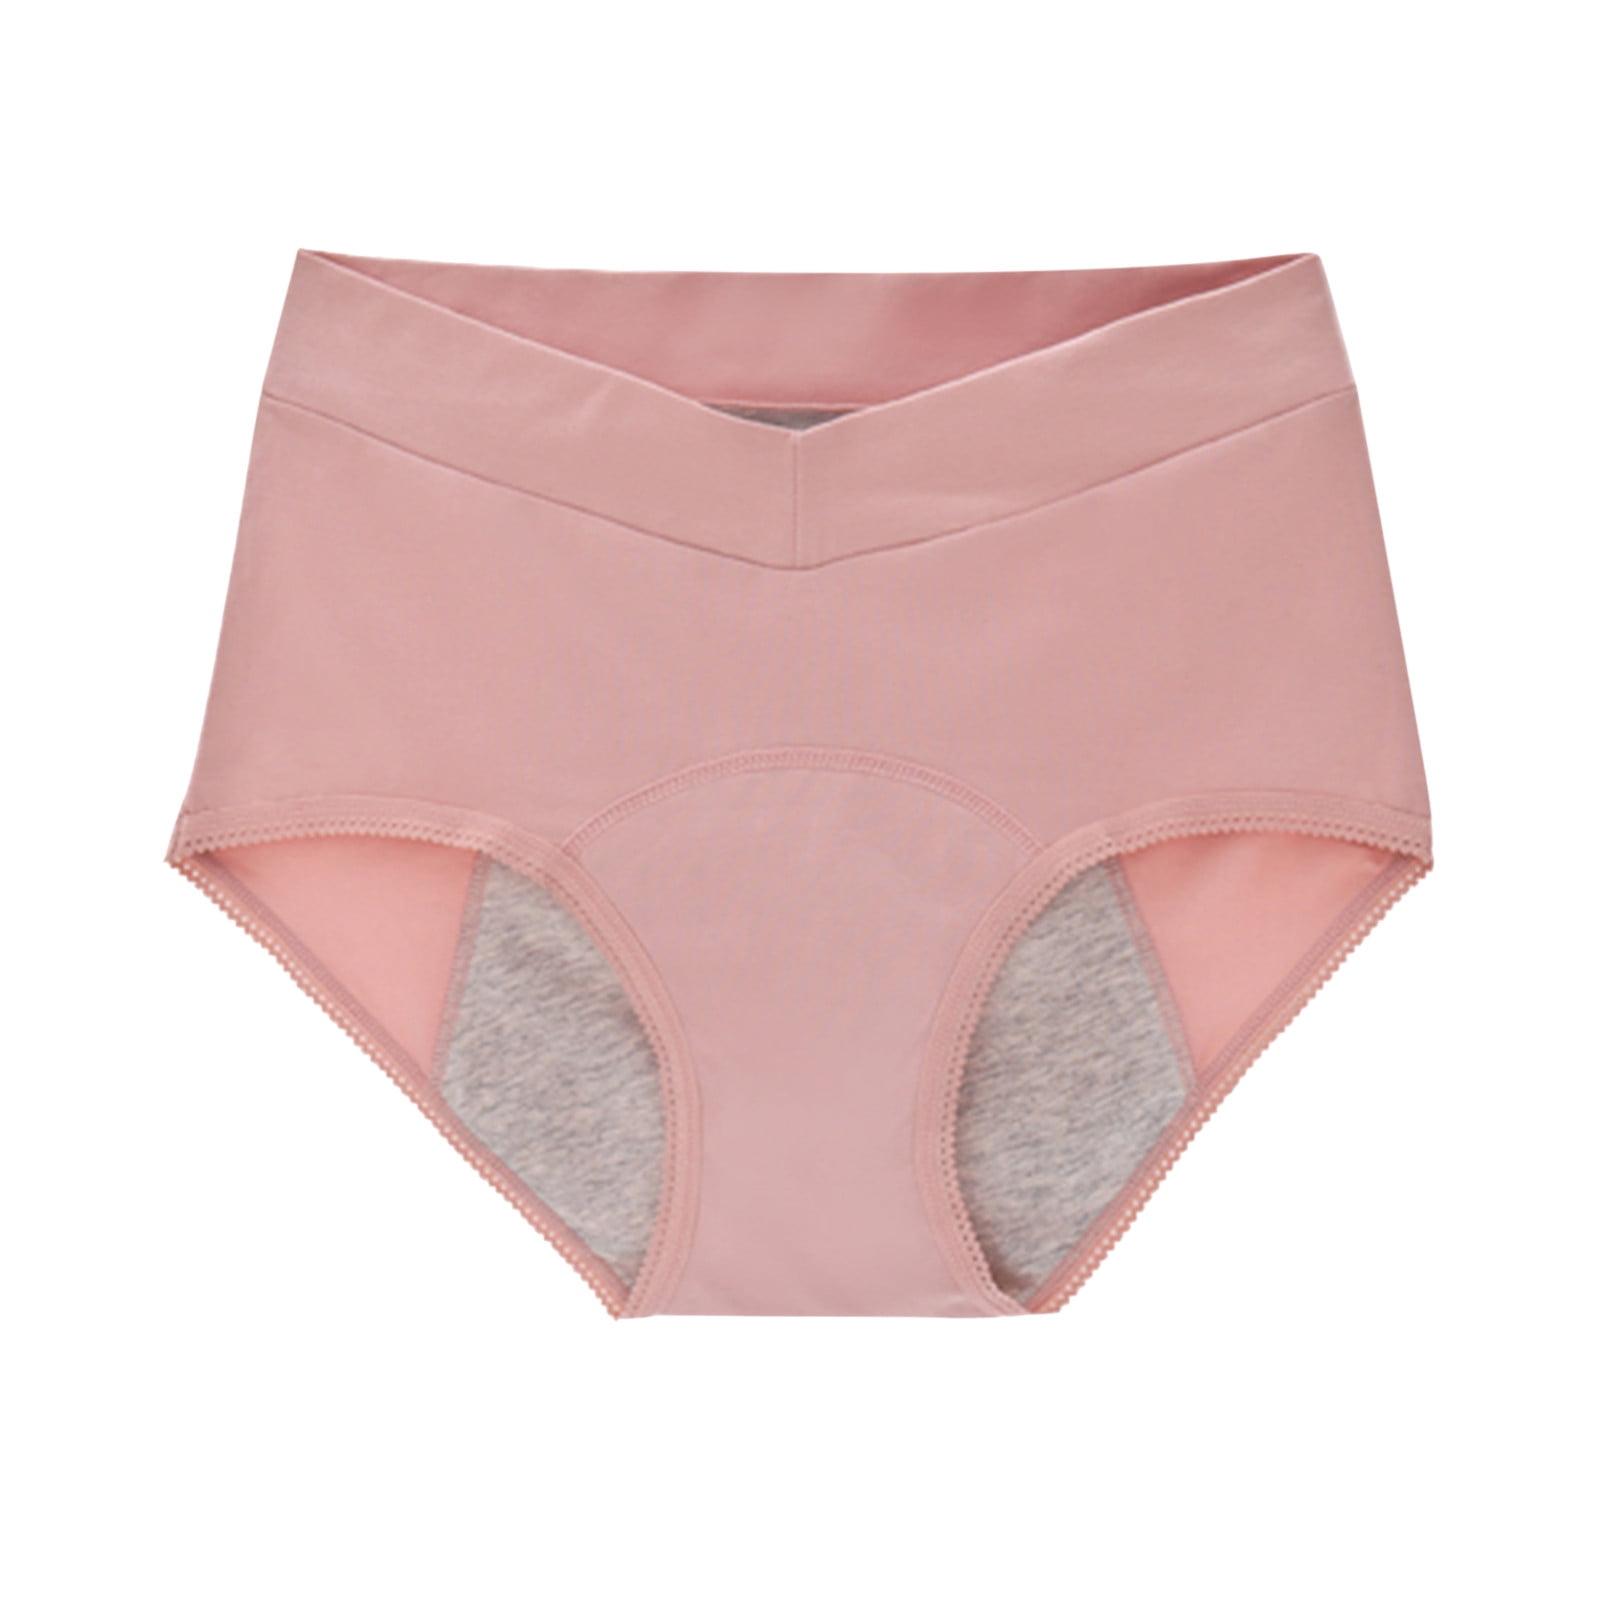 2DXuixsh Pads Underwear For Women Plus Size 1 Piece Underpants